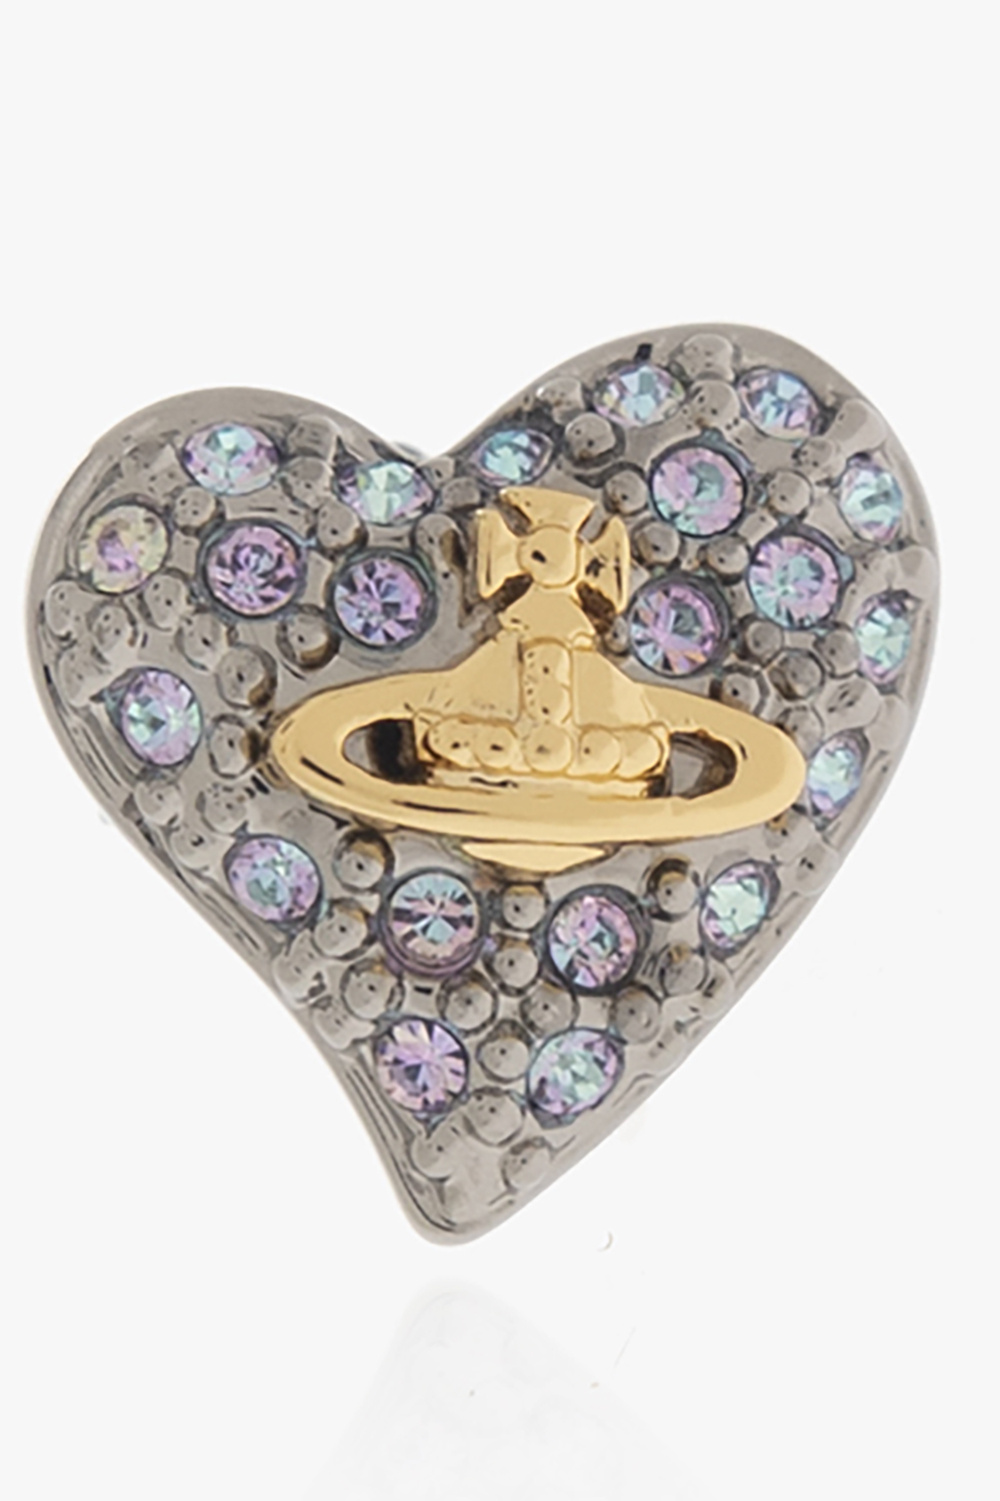 Louis Vuitton Vivienne pendant, 3 golds & diamonds - Vitkac shop online